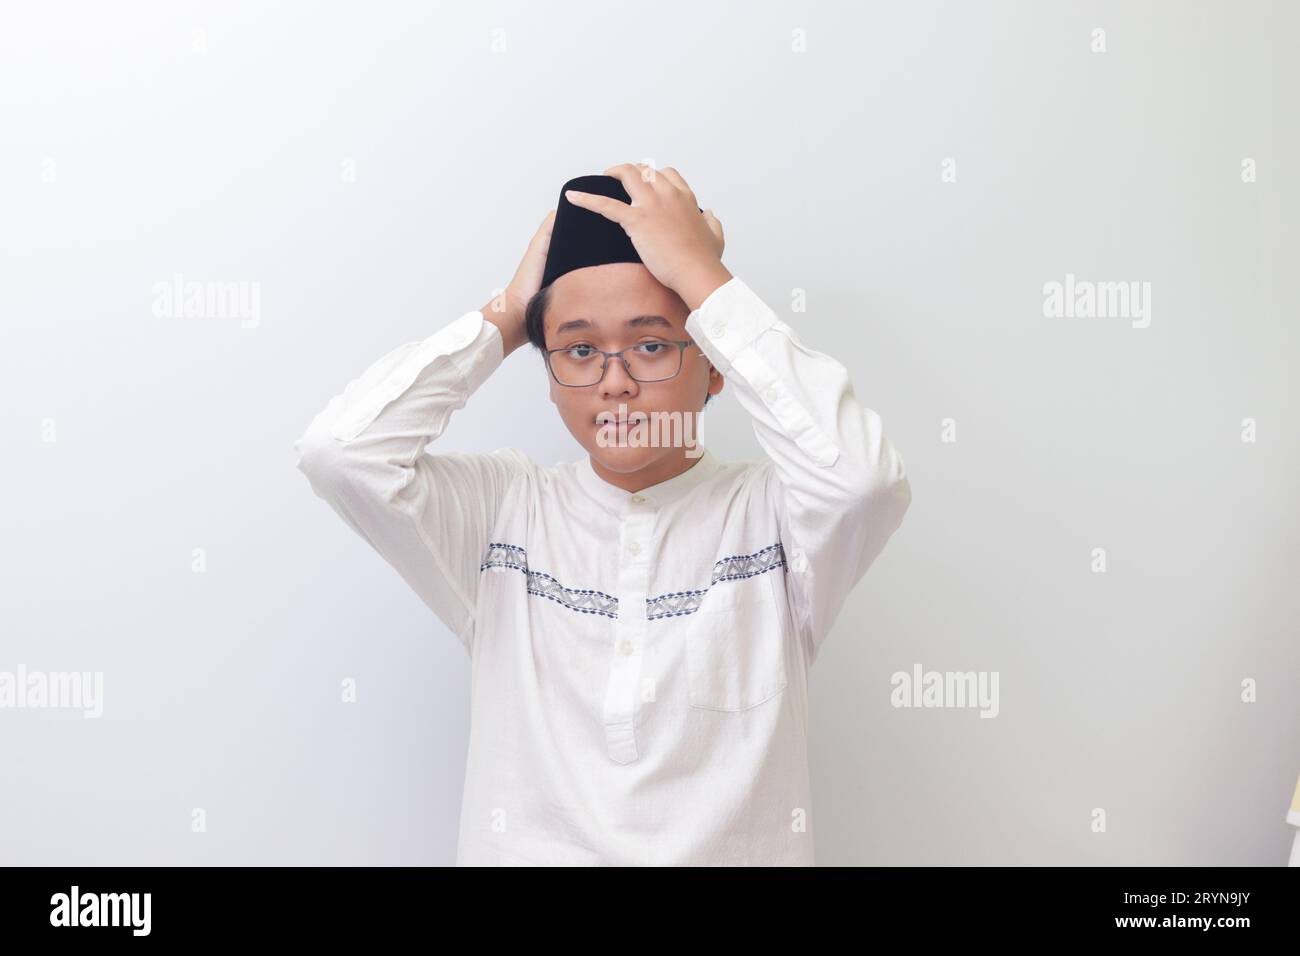 Ritratto di un giovane musulmano asiatico che cerca di regolare il suo songkok o Skullcap nero. Immagine isolata su sfondo bianco Foto Stock